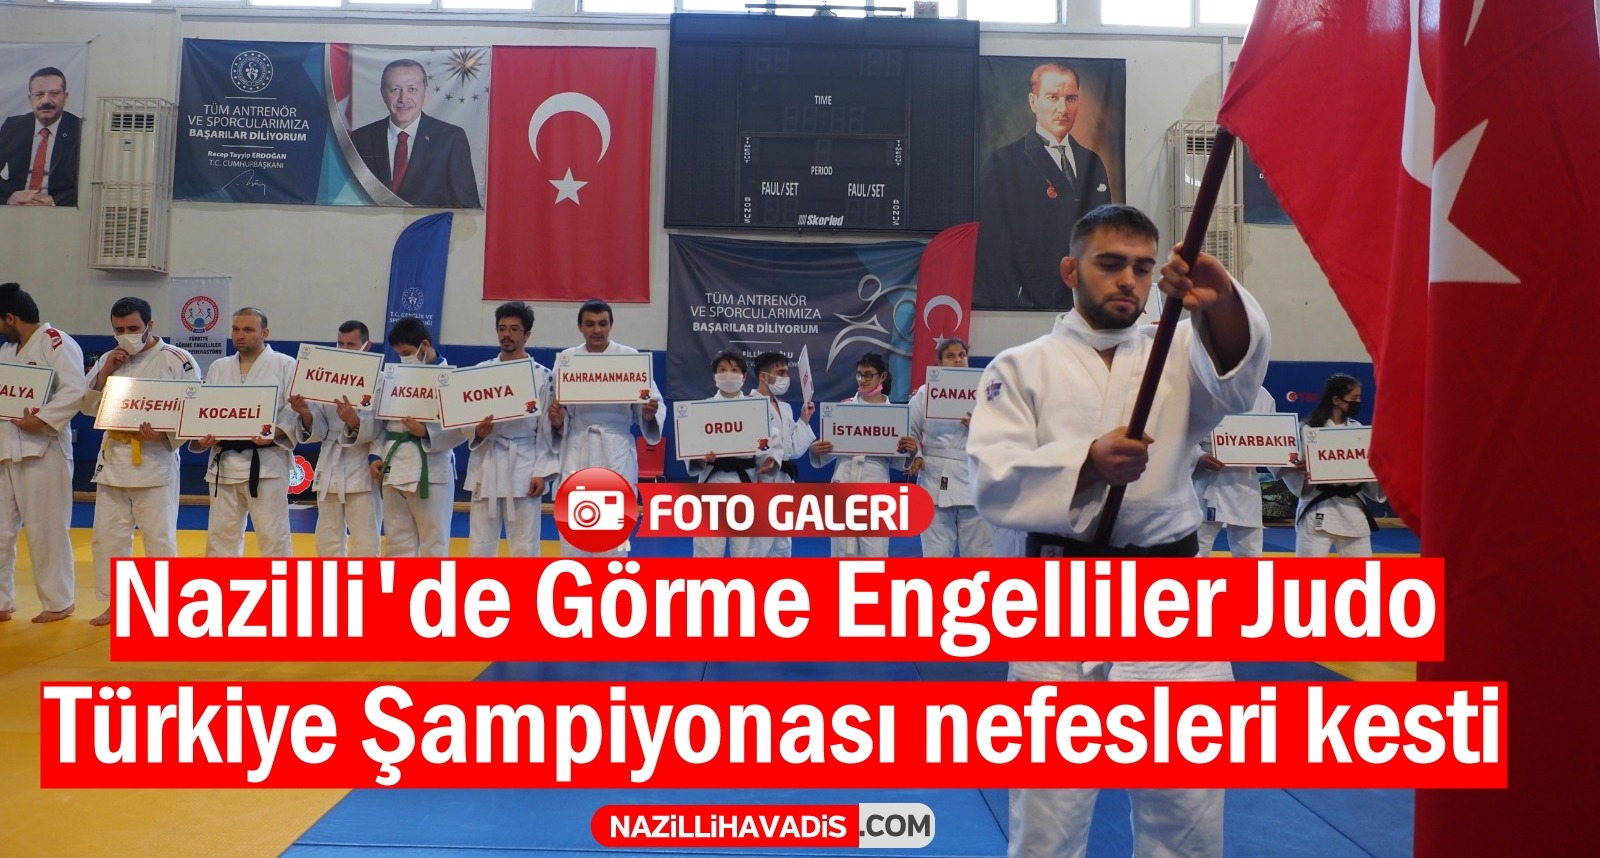 Nazilli’de Görme Engelliler Judo Türkiye Şampiyonası düzenlendi